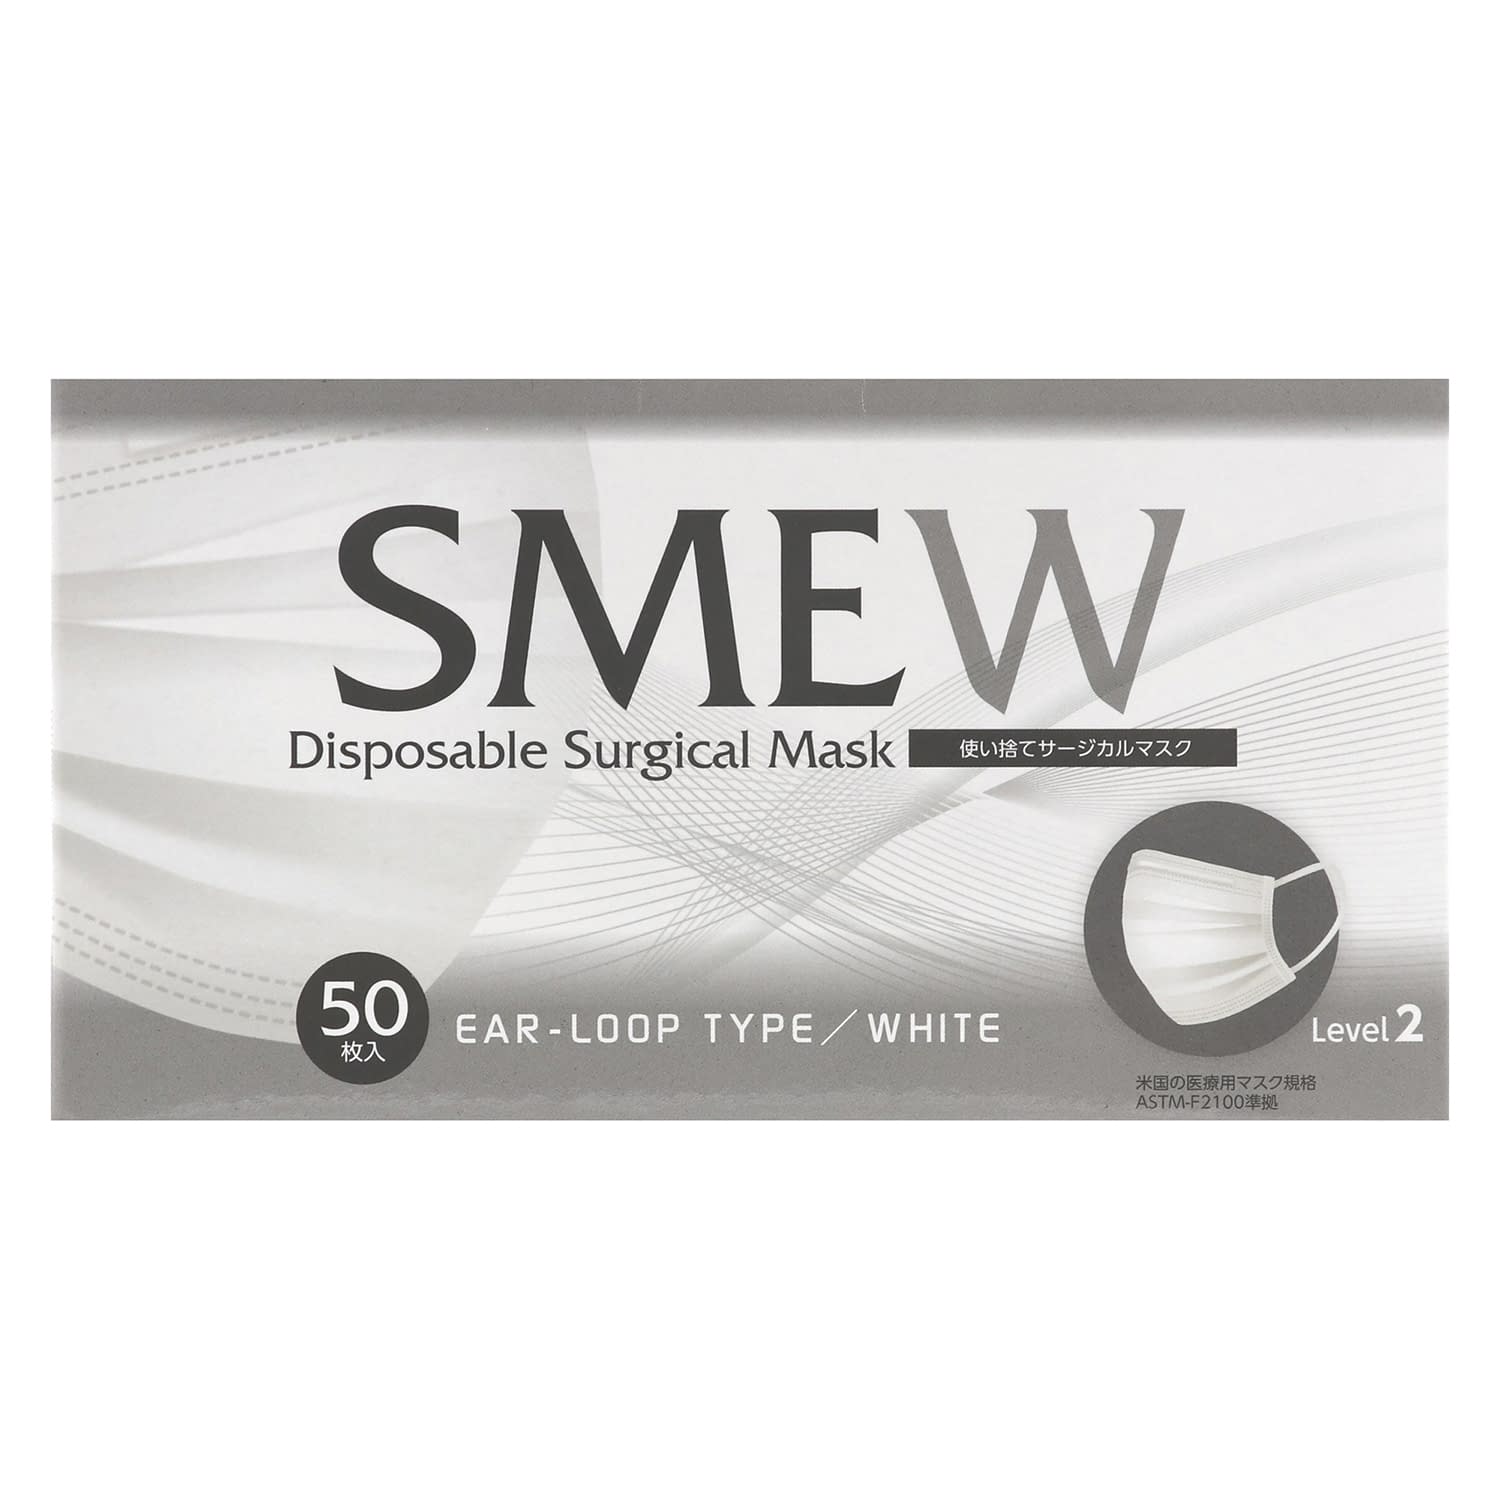 サージカルマスク SMEW 50マイイリ ホワイト  24-9586-00ホワイト【クー・メディカル・ジャパン】(SMEW)(24-9586-00)